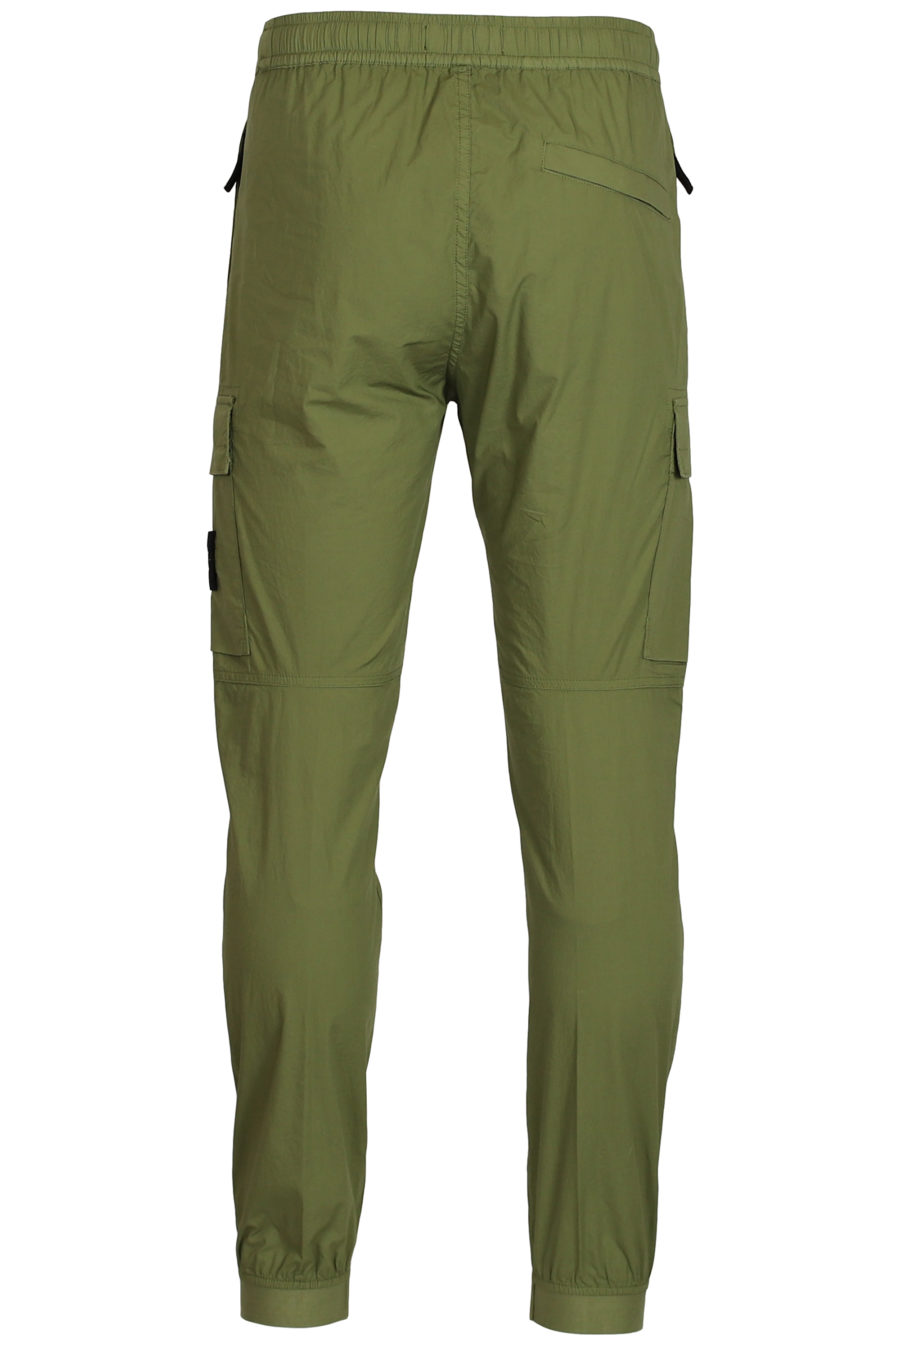 Pantalón con bolsillos verde militar - IMG 3761